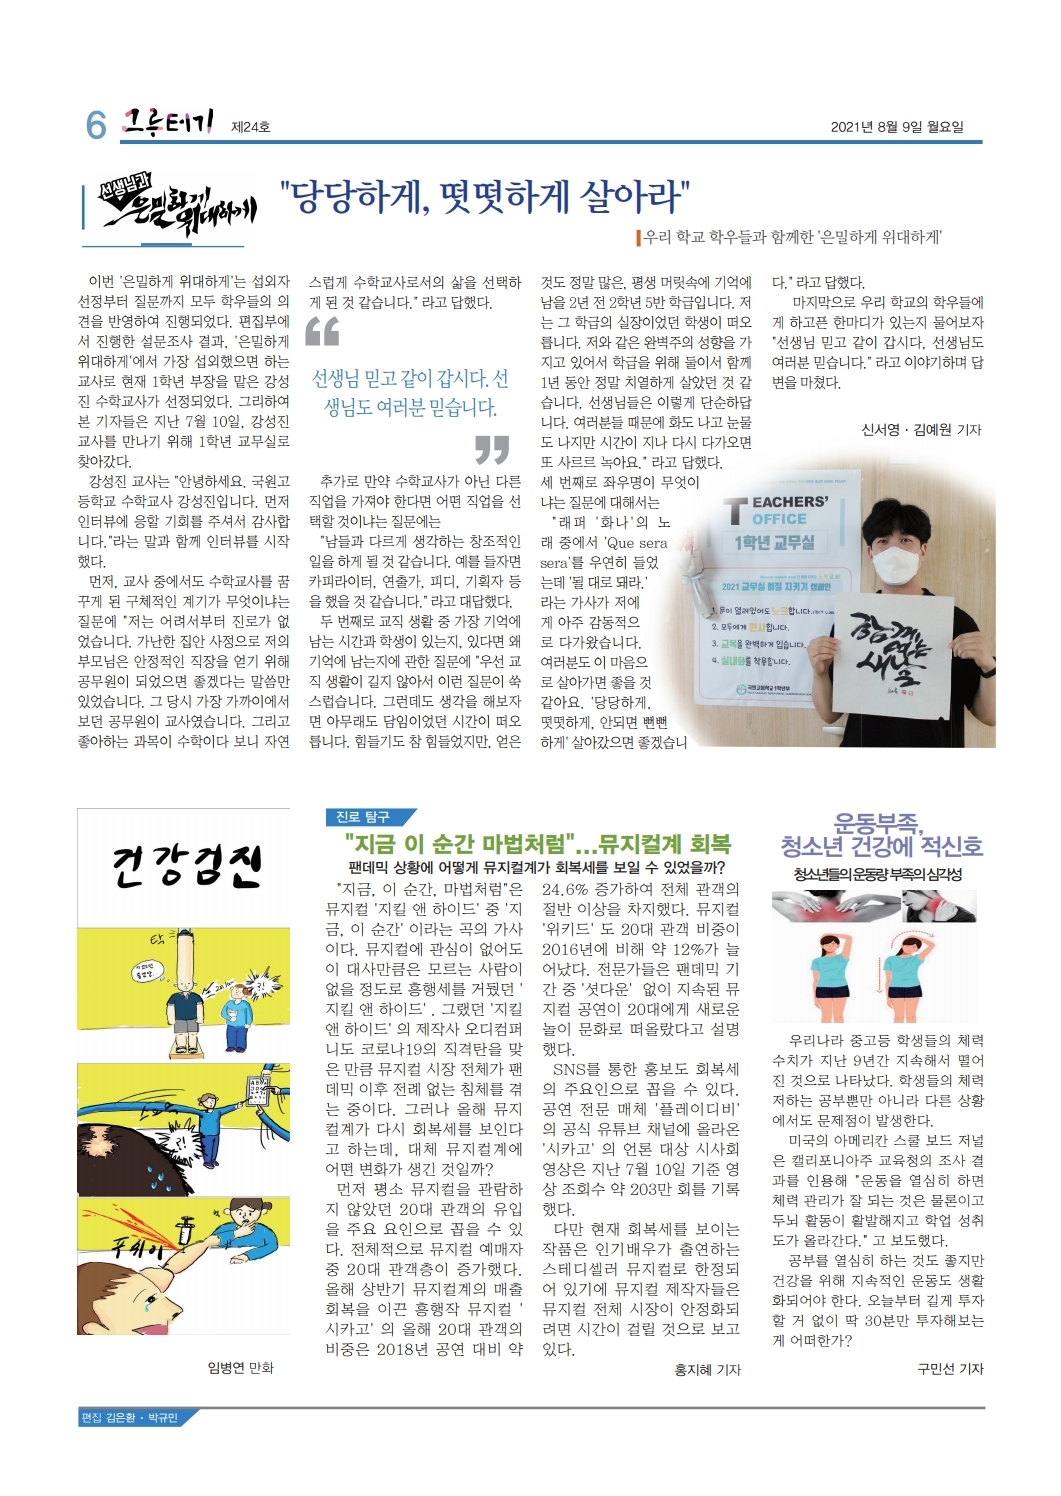 국원고 학생회 신문(21.8.9) (6)